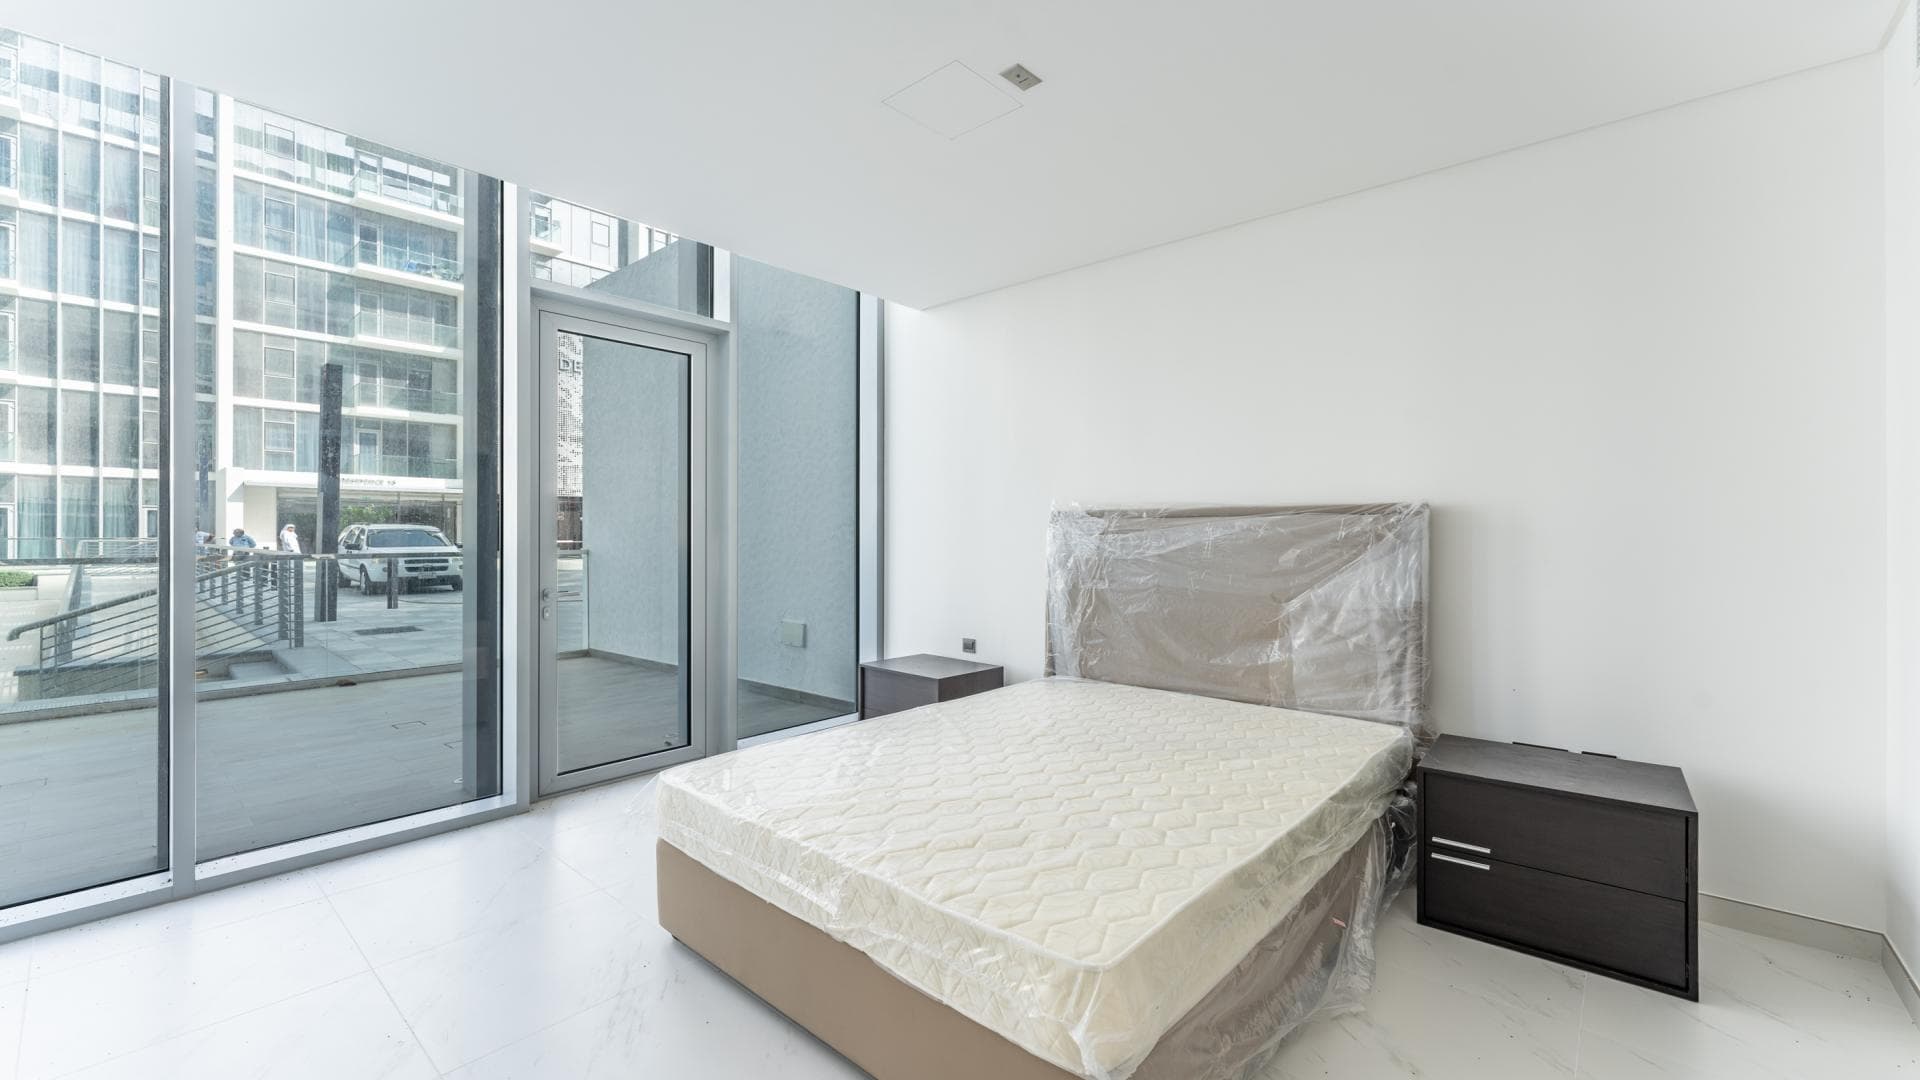 1 Bedroom Apartment For Rent  Lp37931 14e3c50652a78200.jpg